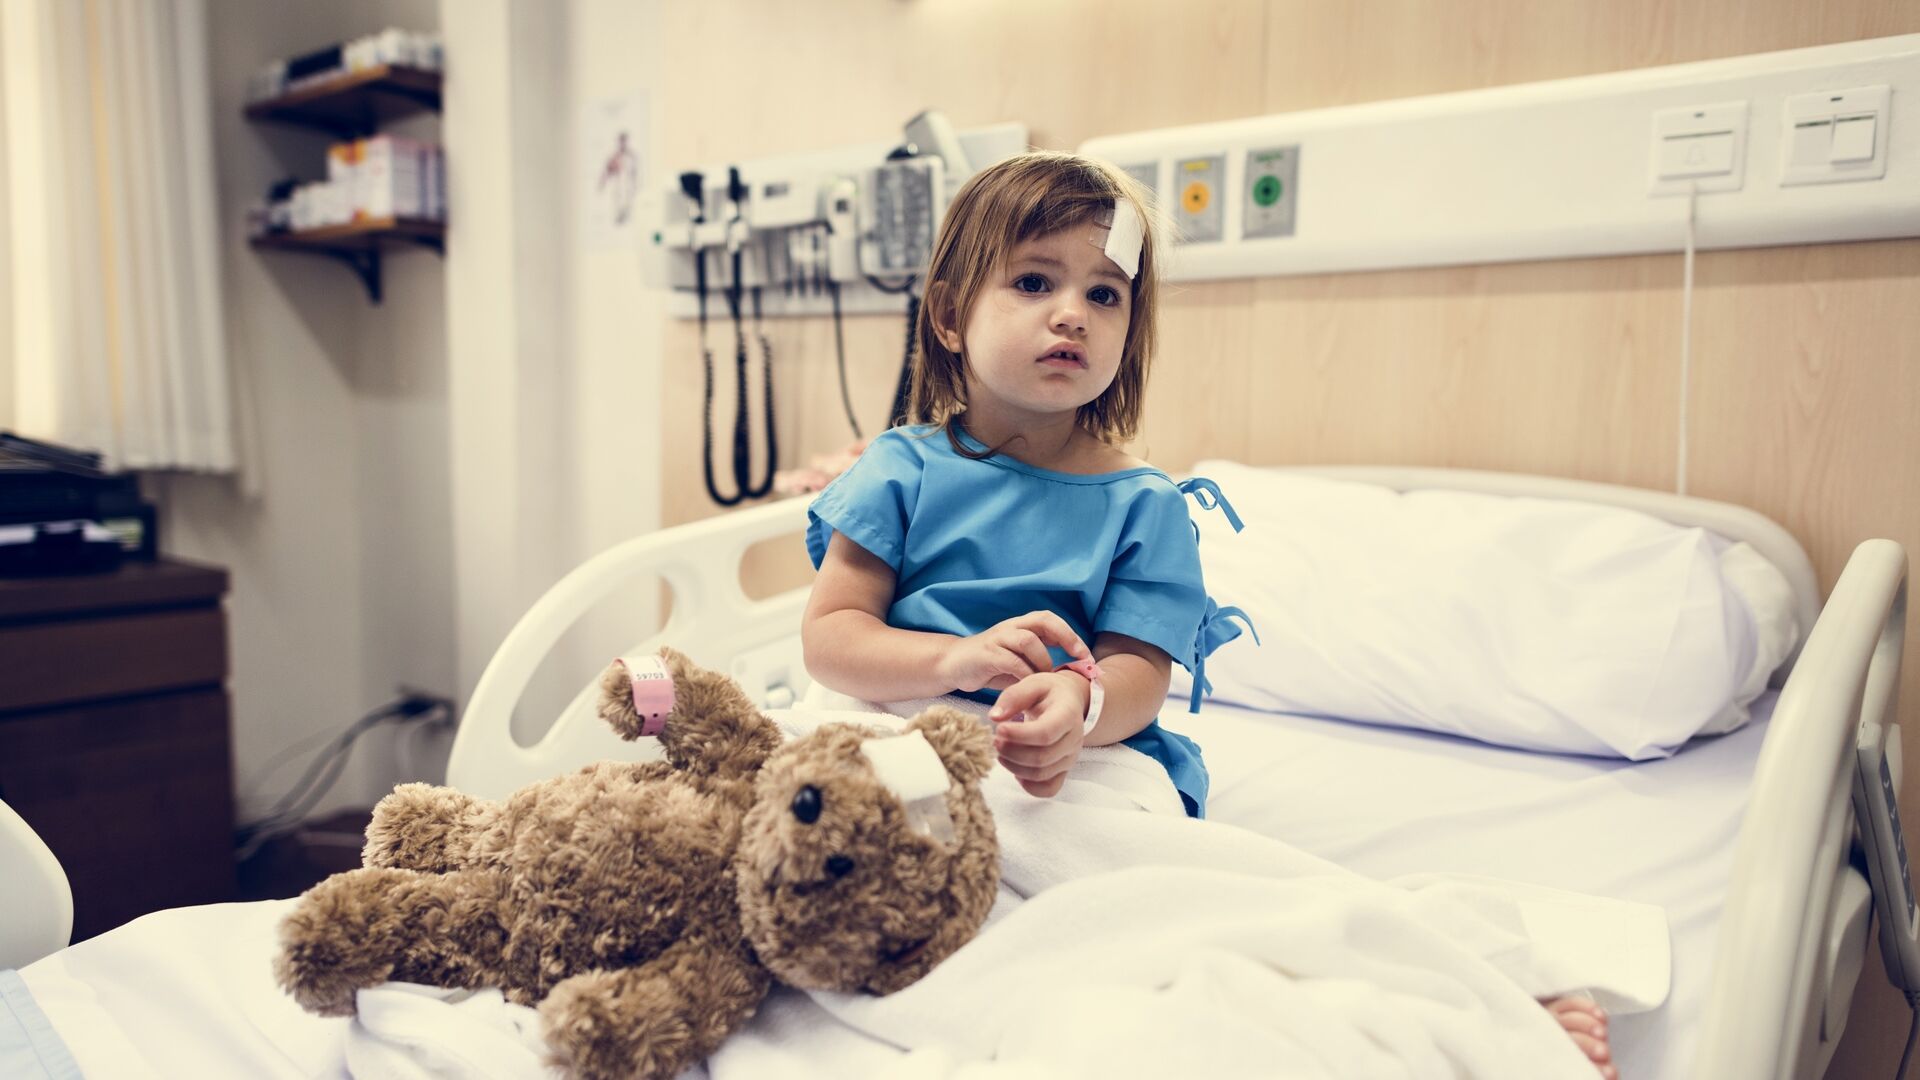 Assistenza sanitaria: una bambina ricoverata in ospedale seduta su un letto accanto al proprio orsacchiotto